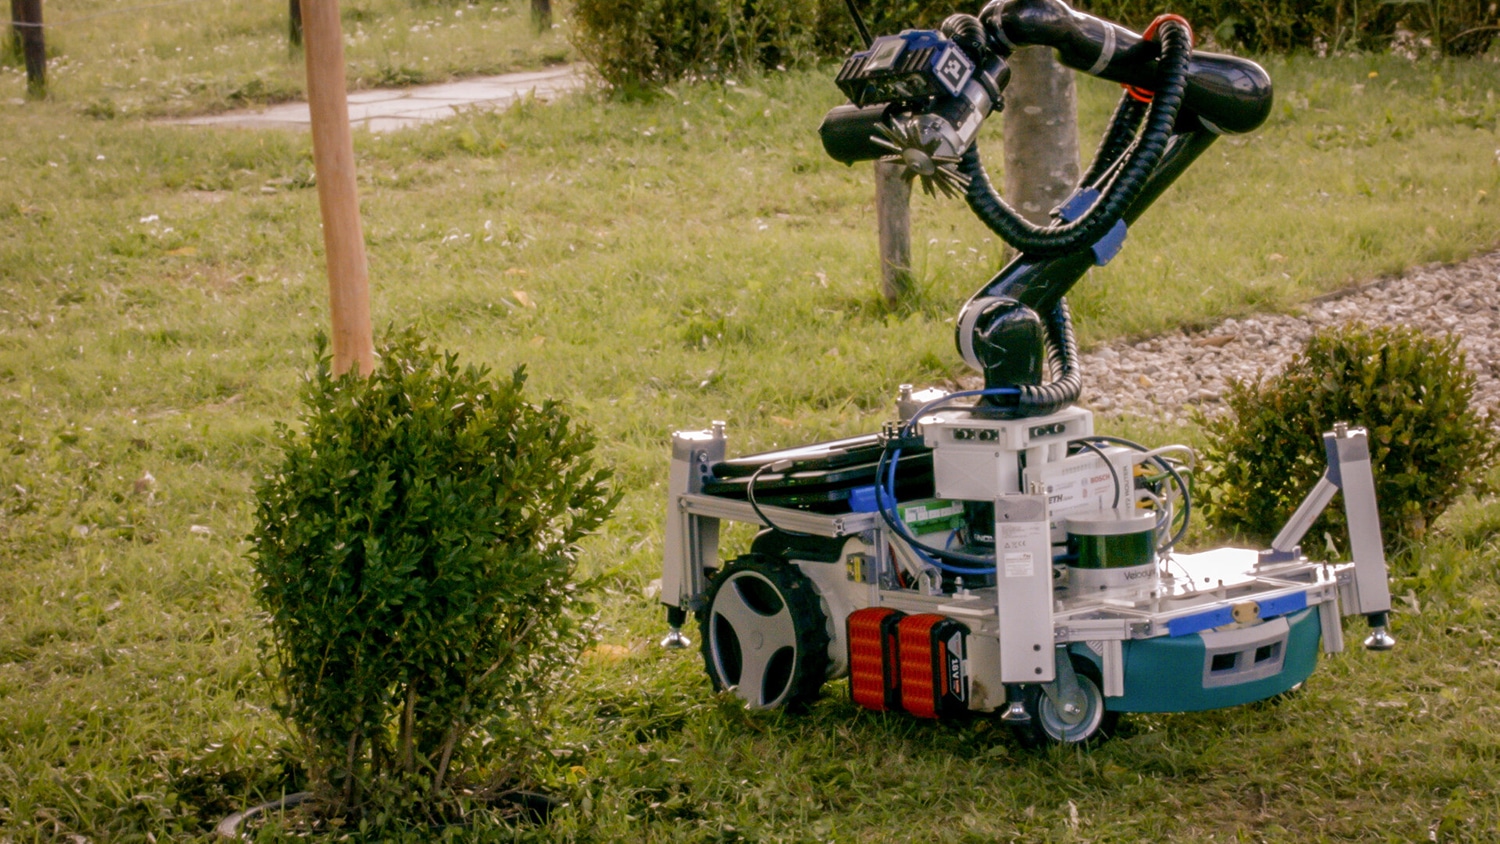 Trimbot robot trimming a bush.